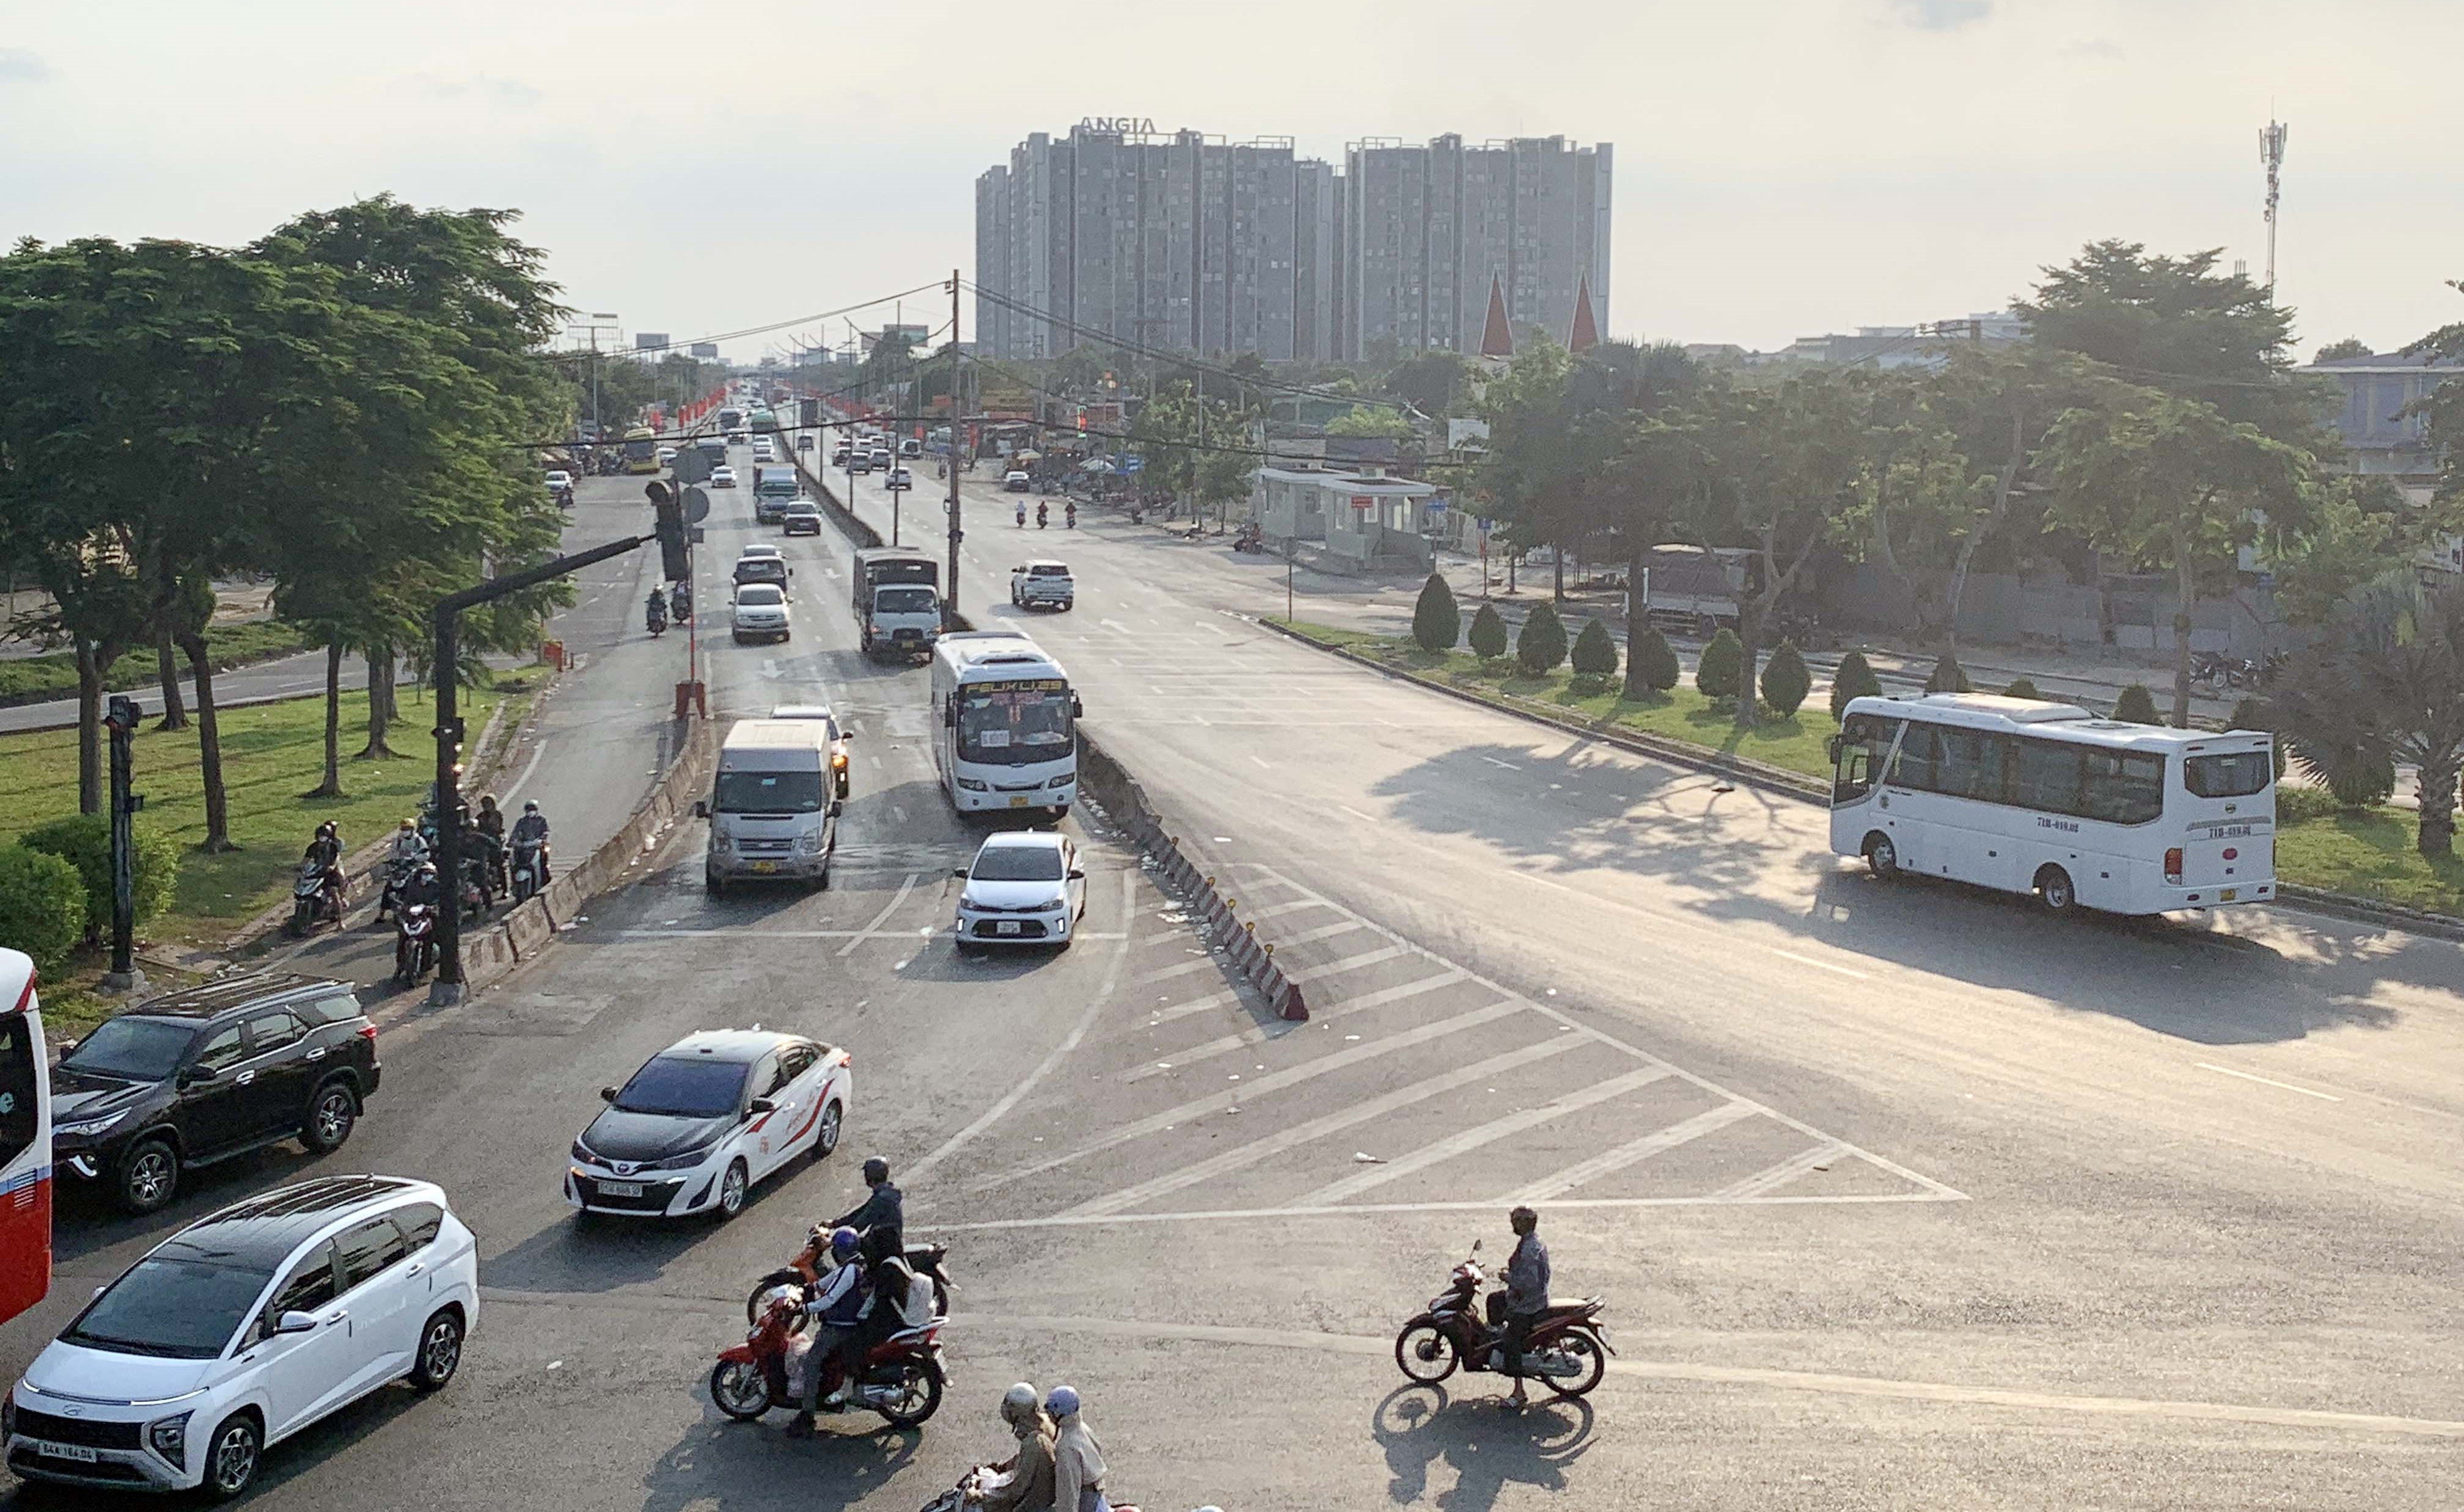 Hướng từ đường cao tốc ra nút giao Quốc lộ 1 – Nguyễn Văn Linh cũng không có ùn tắc.